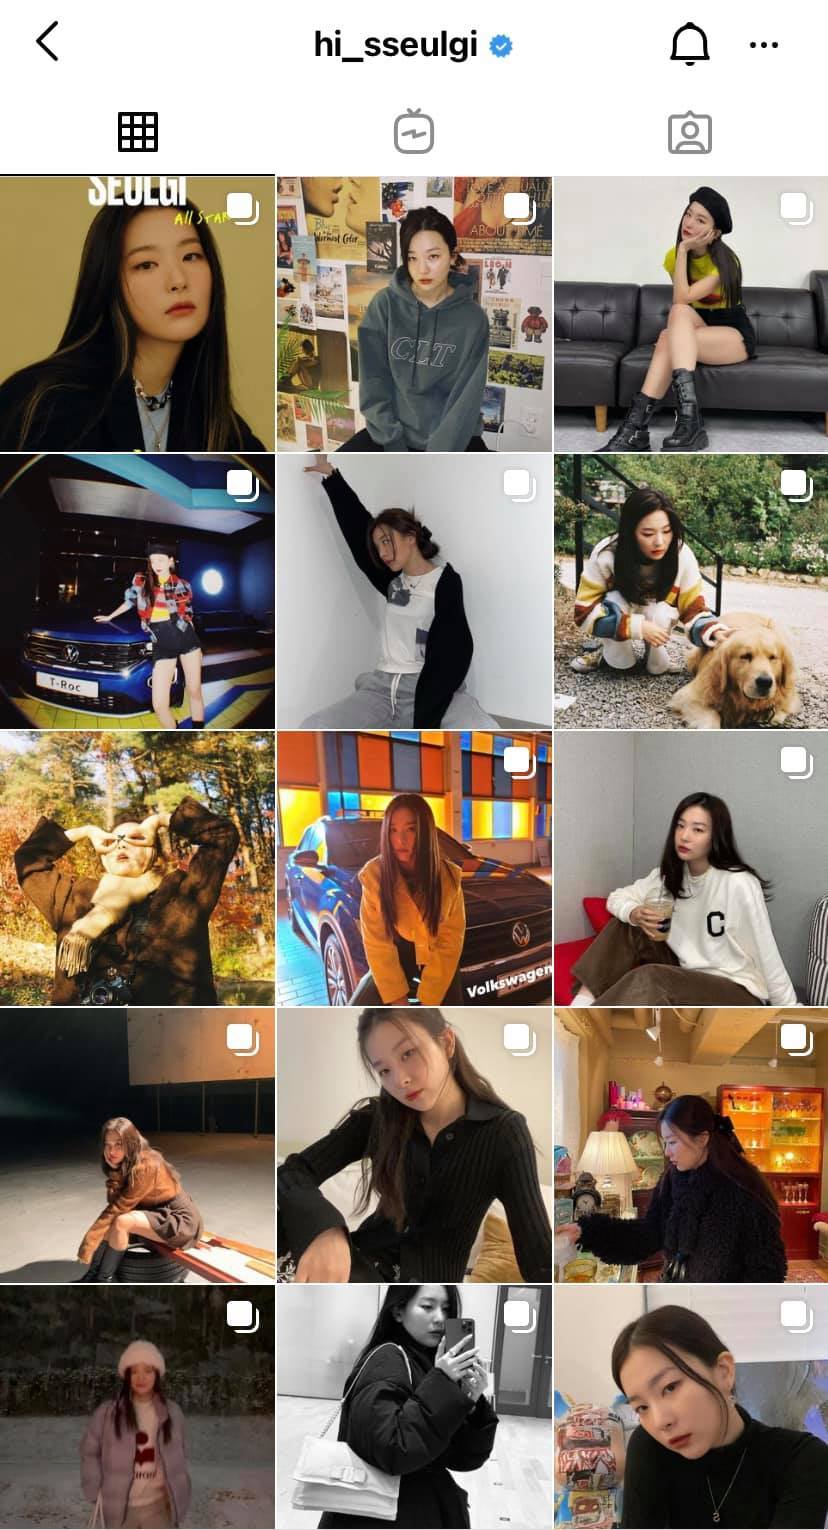  
Nhiều non-fan cũng rất yêu thích hình ảnh trên Instagram của Seulgi. (Ảnh: IG)